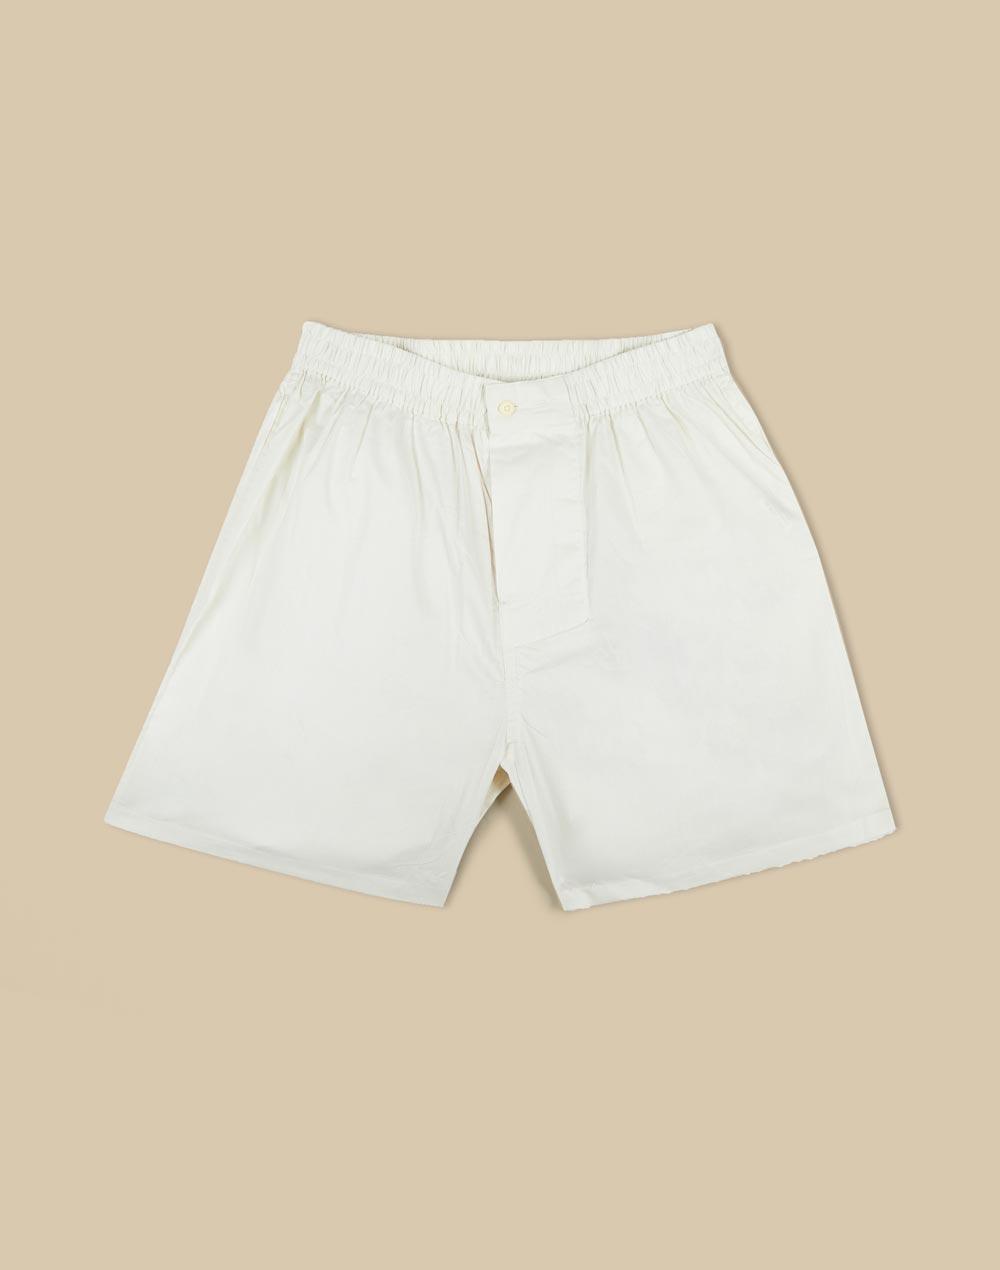 offwhite cotton boxer shorts